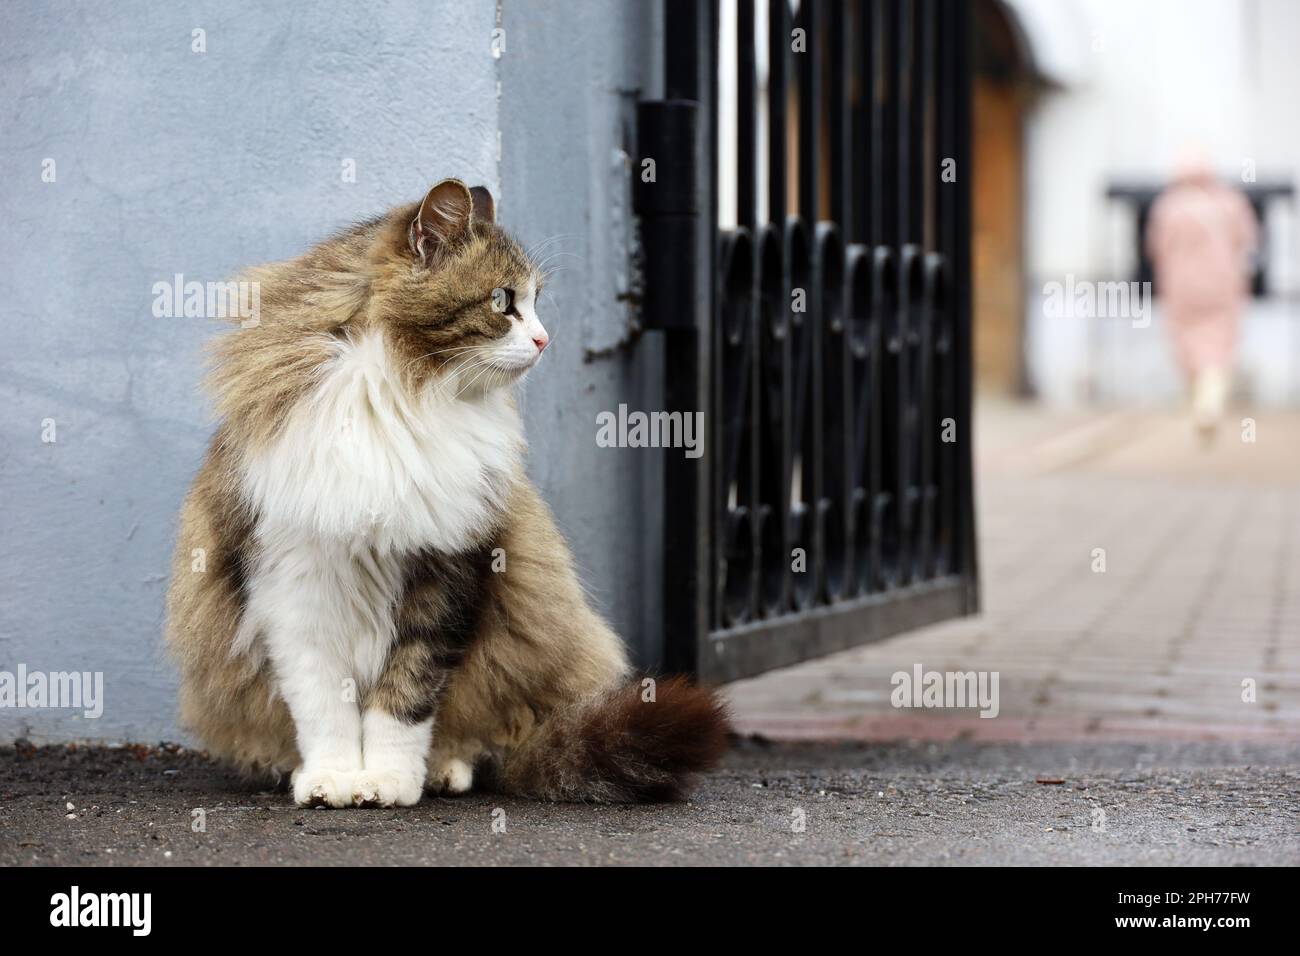 Porträt einer flauschigen Katze, die auf einer Straße neben dem offenen Tor sitzt Stockfoto